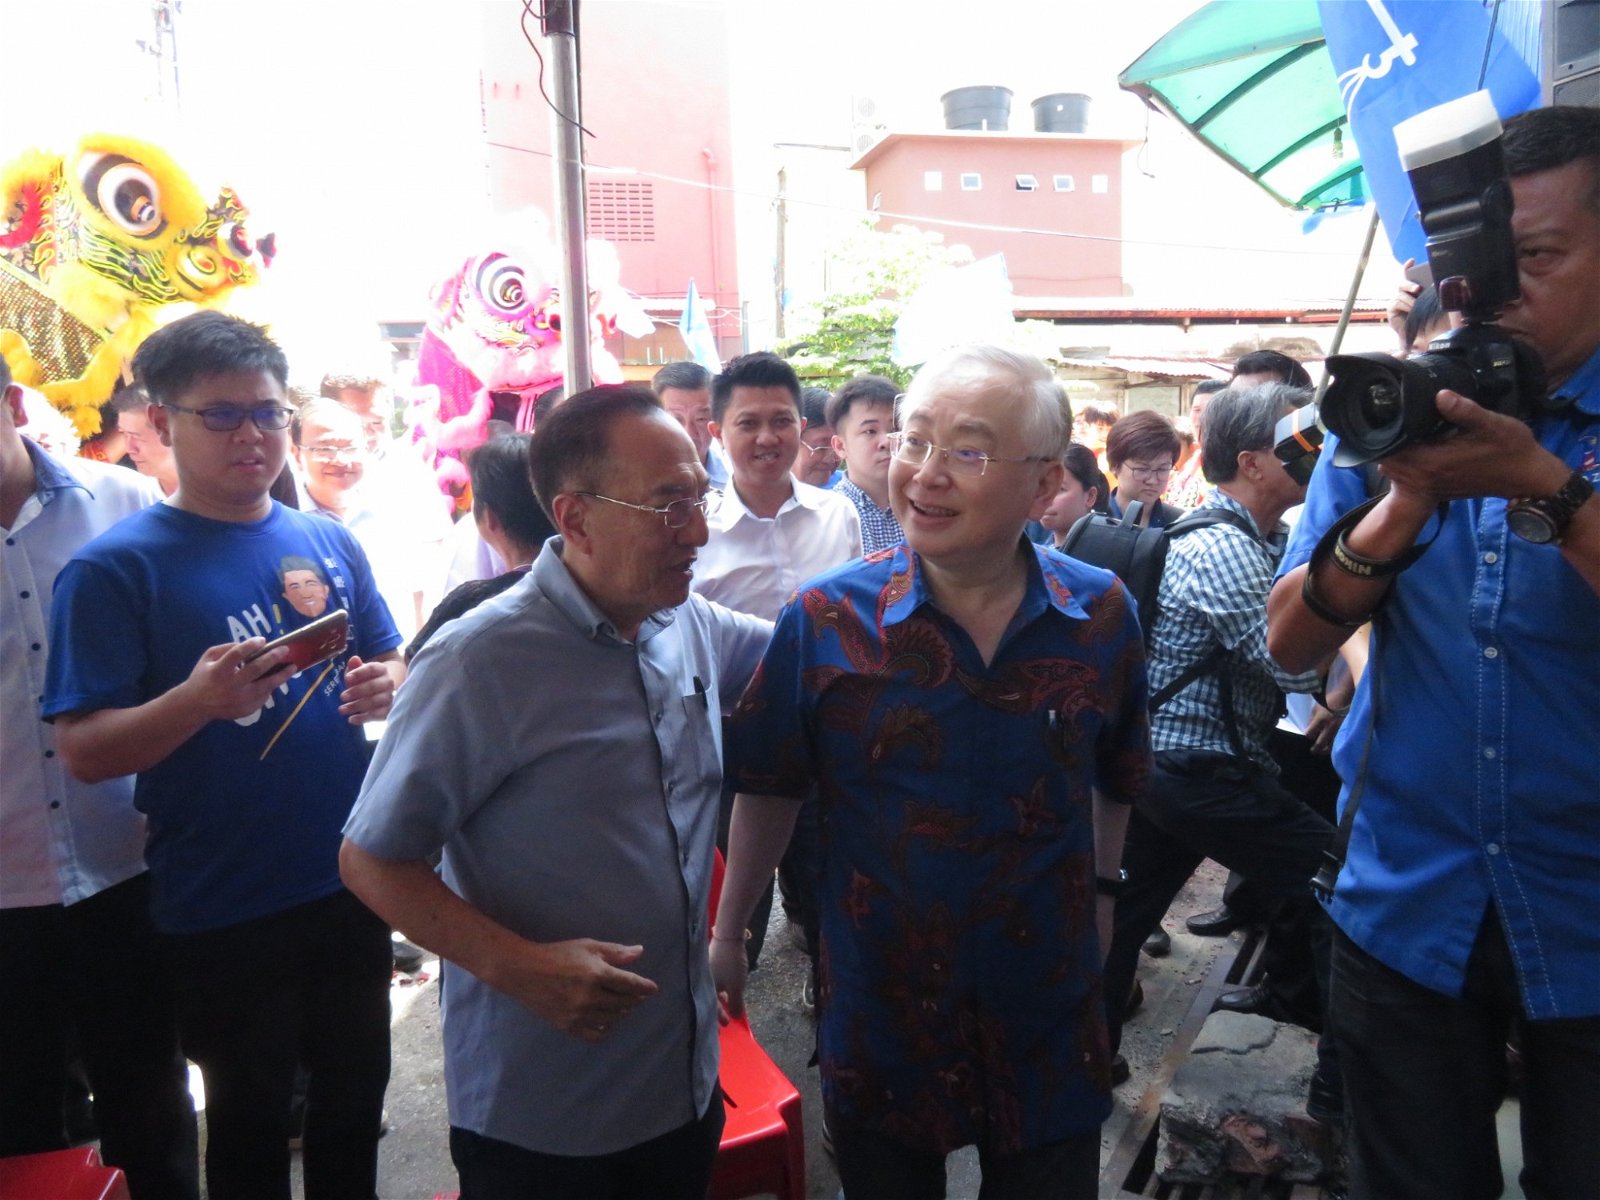 魏家祥（右）与前教育部副部长拿督韩春锦相见欢，2人一边走一边交换选情。